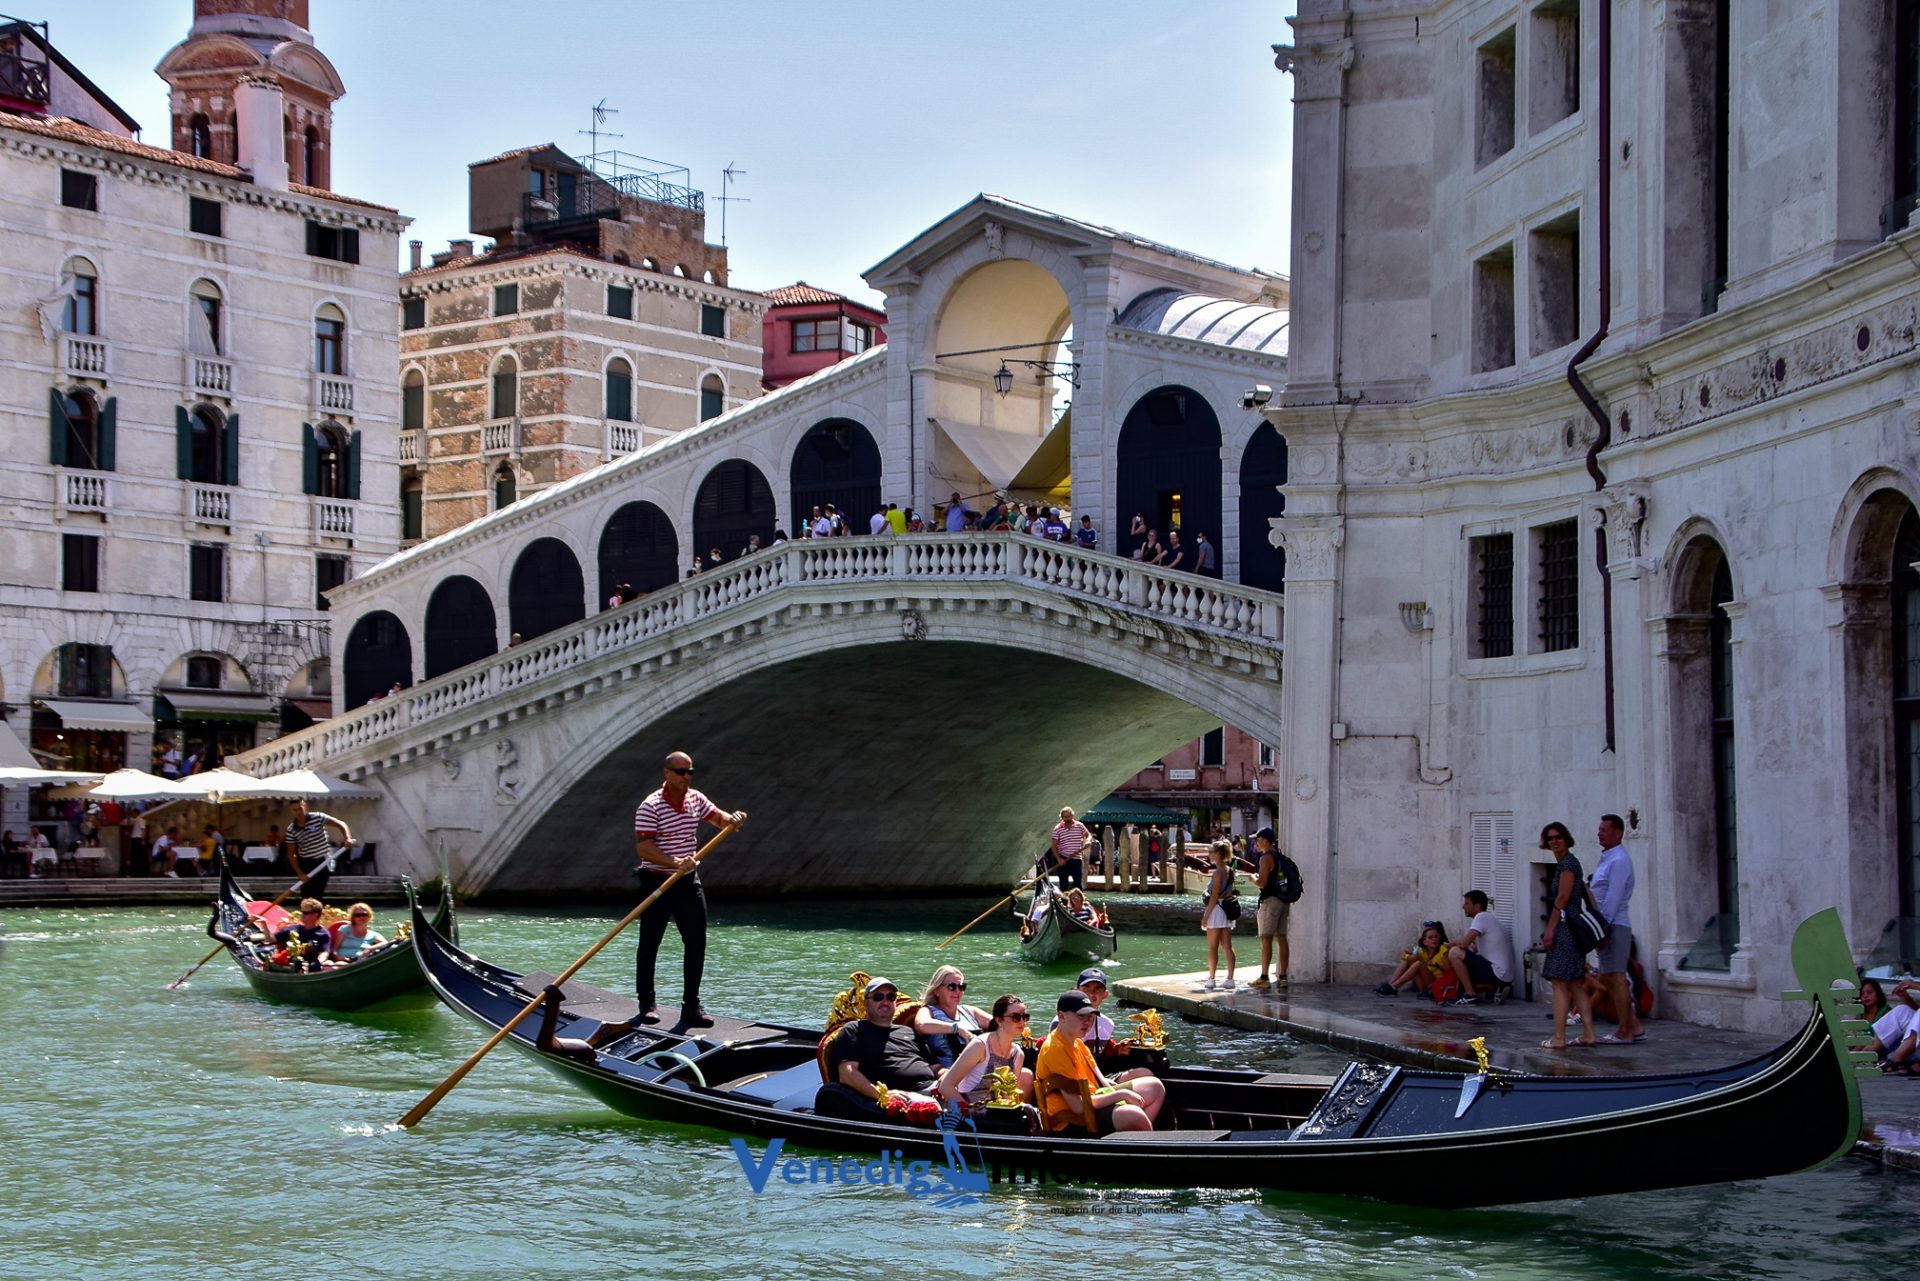 Welche sind die berühmtesten Sehenswürdigkeiten in Venedig?